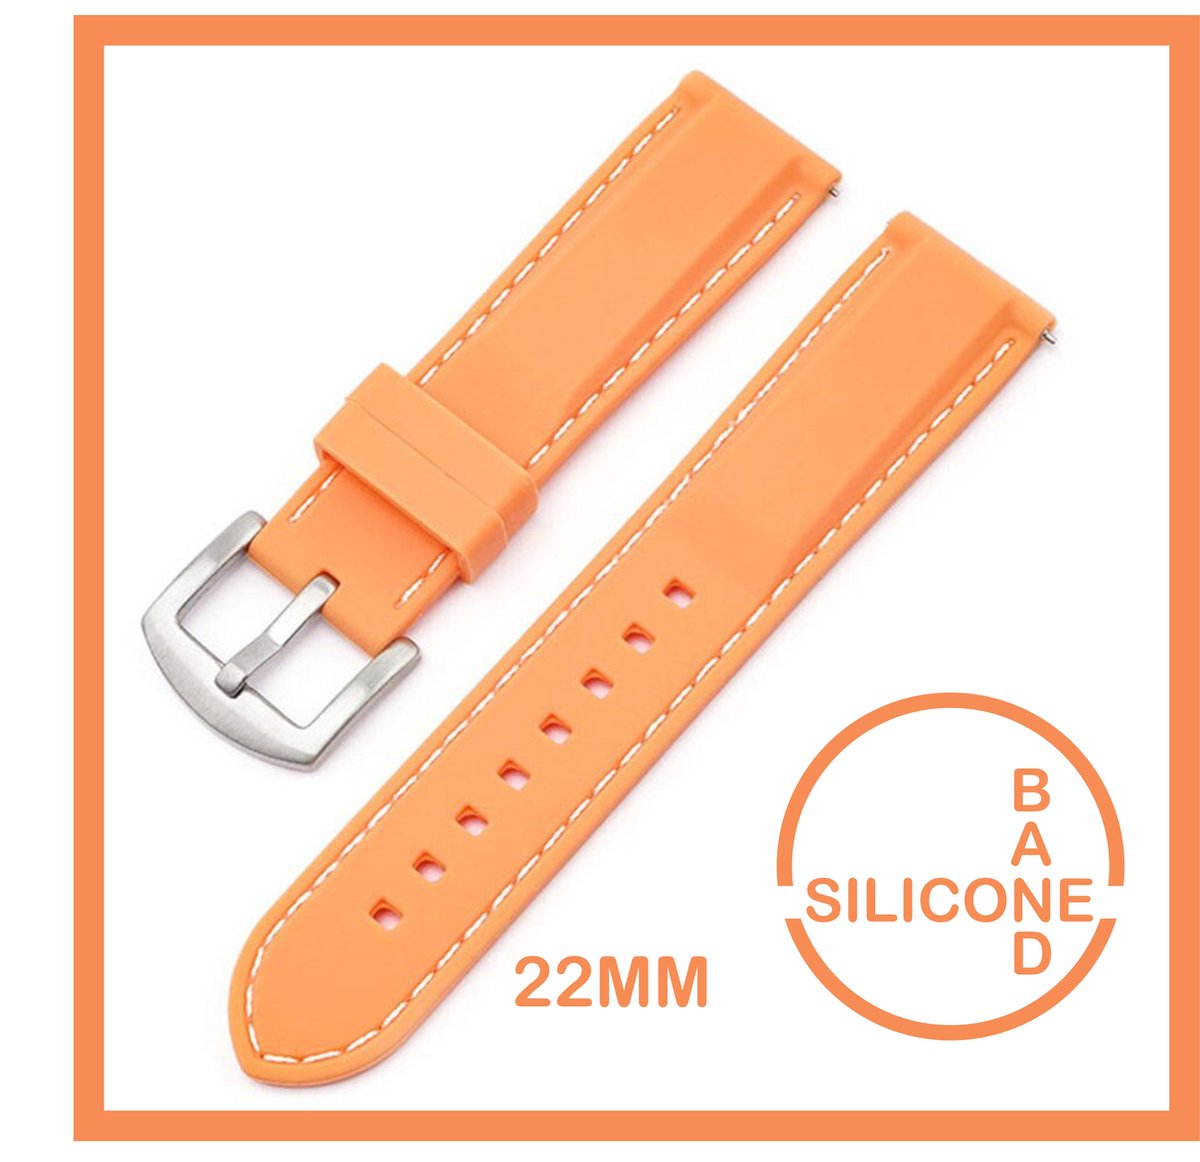 22mm Rubber Siliconen horlogeband Kleur Zalm met witte stiksels passend op o.a Casio Seiko Citizen en alle andere merken - 22 mm Bandje - Horlogebandje horlogeband